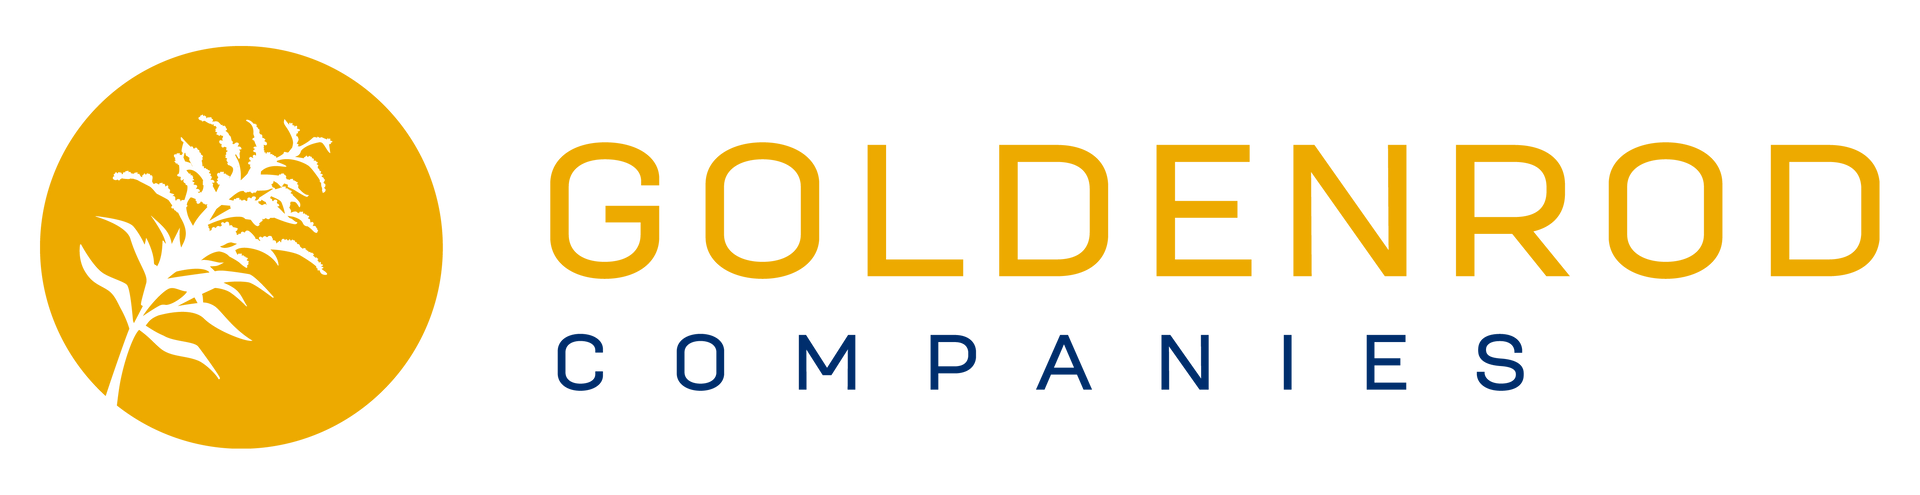 Goldenrod Logo